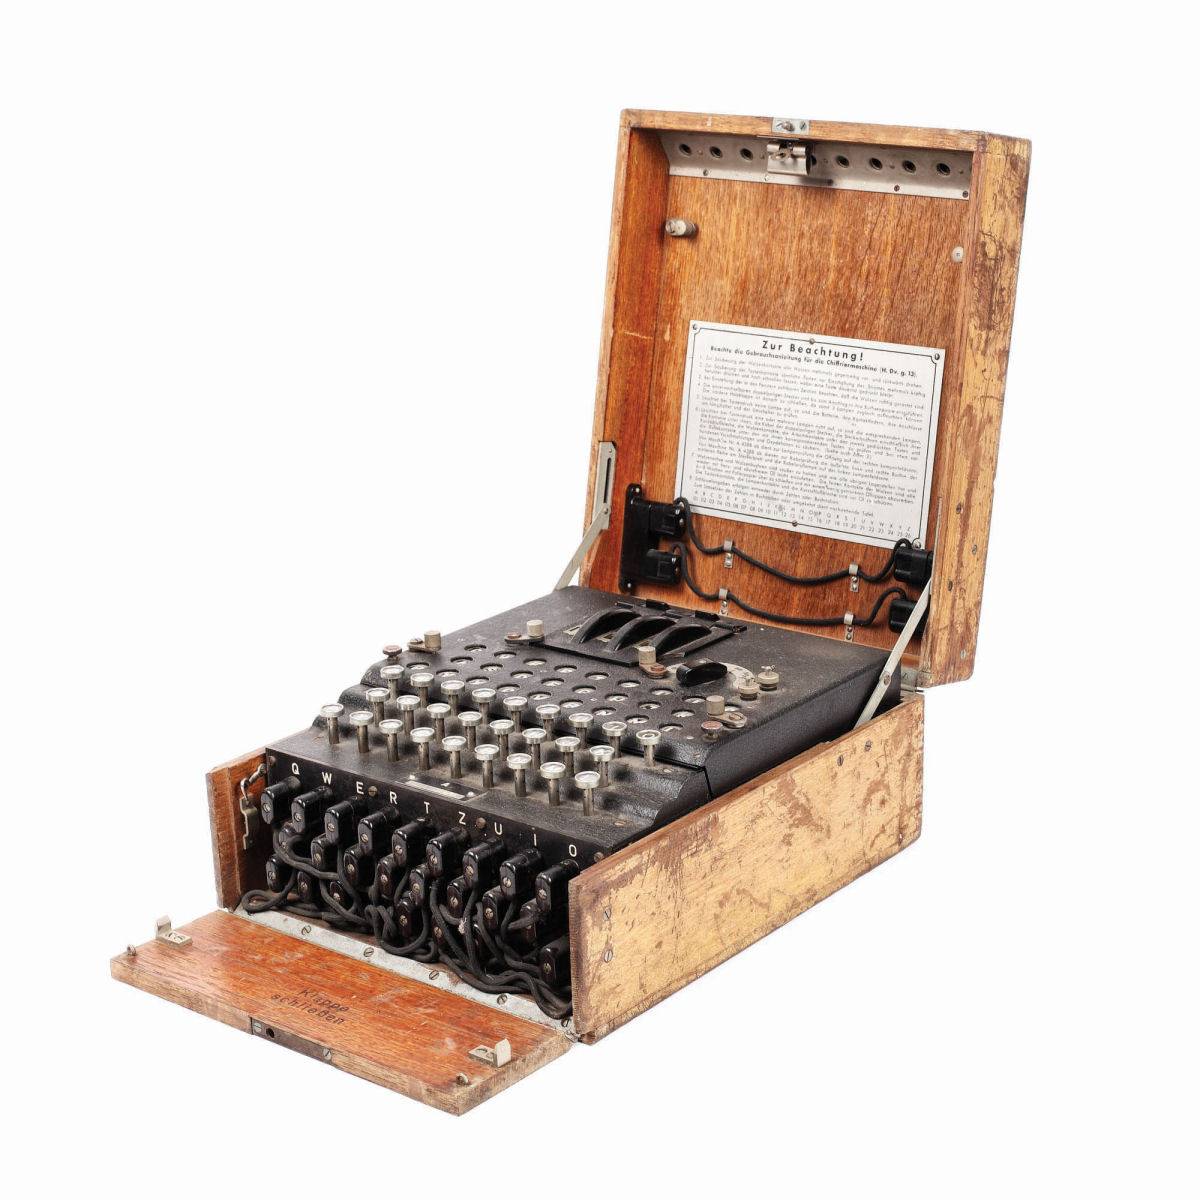 Encontrou uma das míticas máquinas Enigma em uma feira, comprou por 100 dólares, e leiloou por 50.000 01